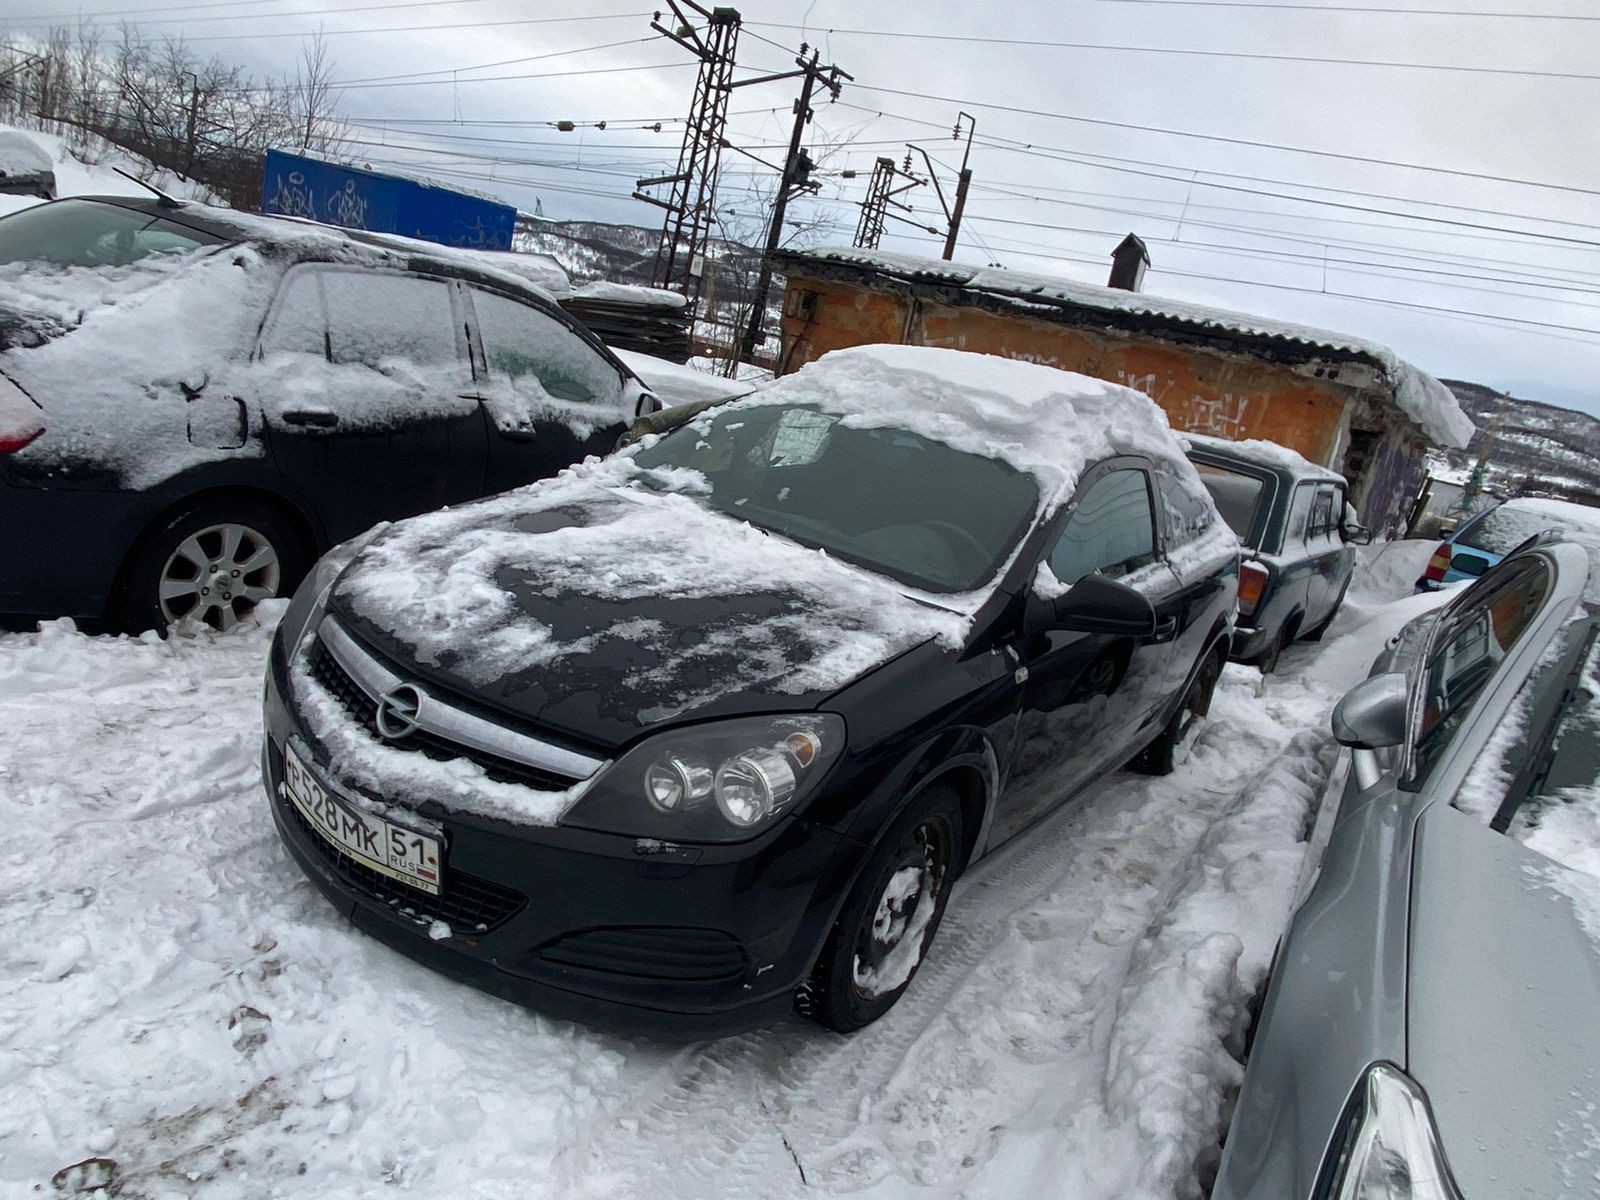 Автомобиль Opel Astra GTC A H C, 2011 г.в., VIN XWF0AHL08B0008586, пробег - 116744 км, на правой две